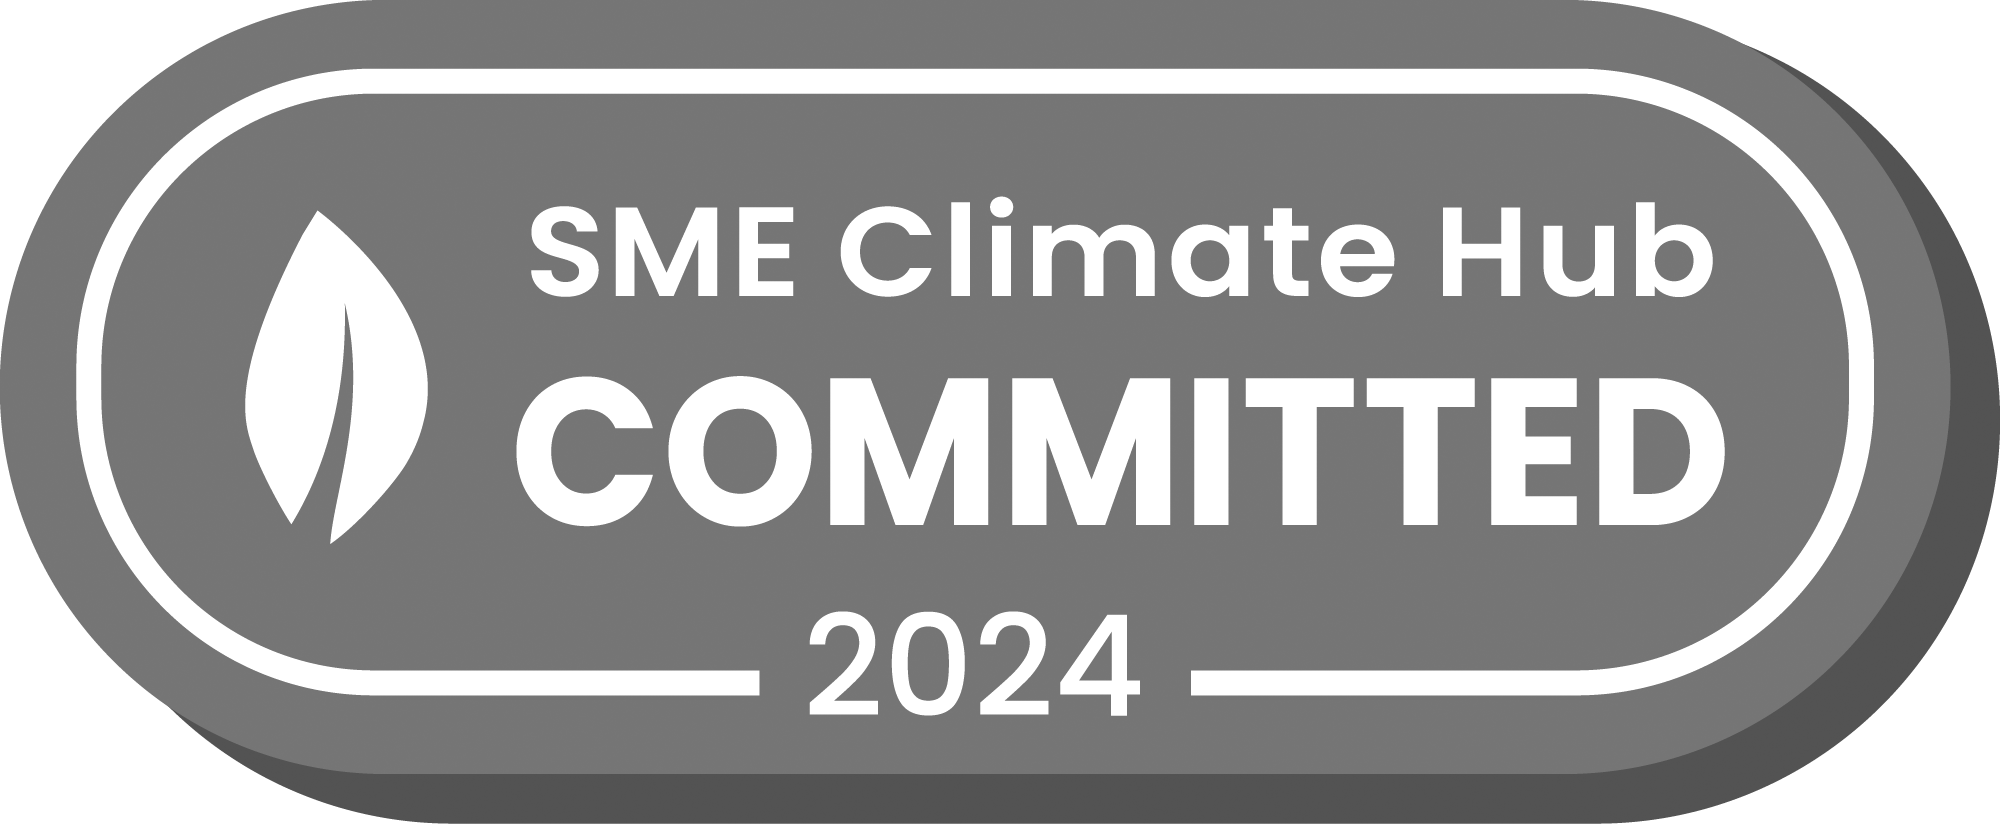 SME Climate Hub 